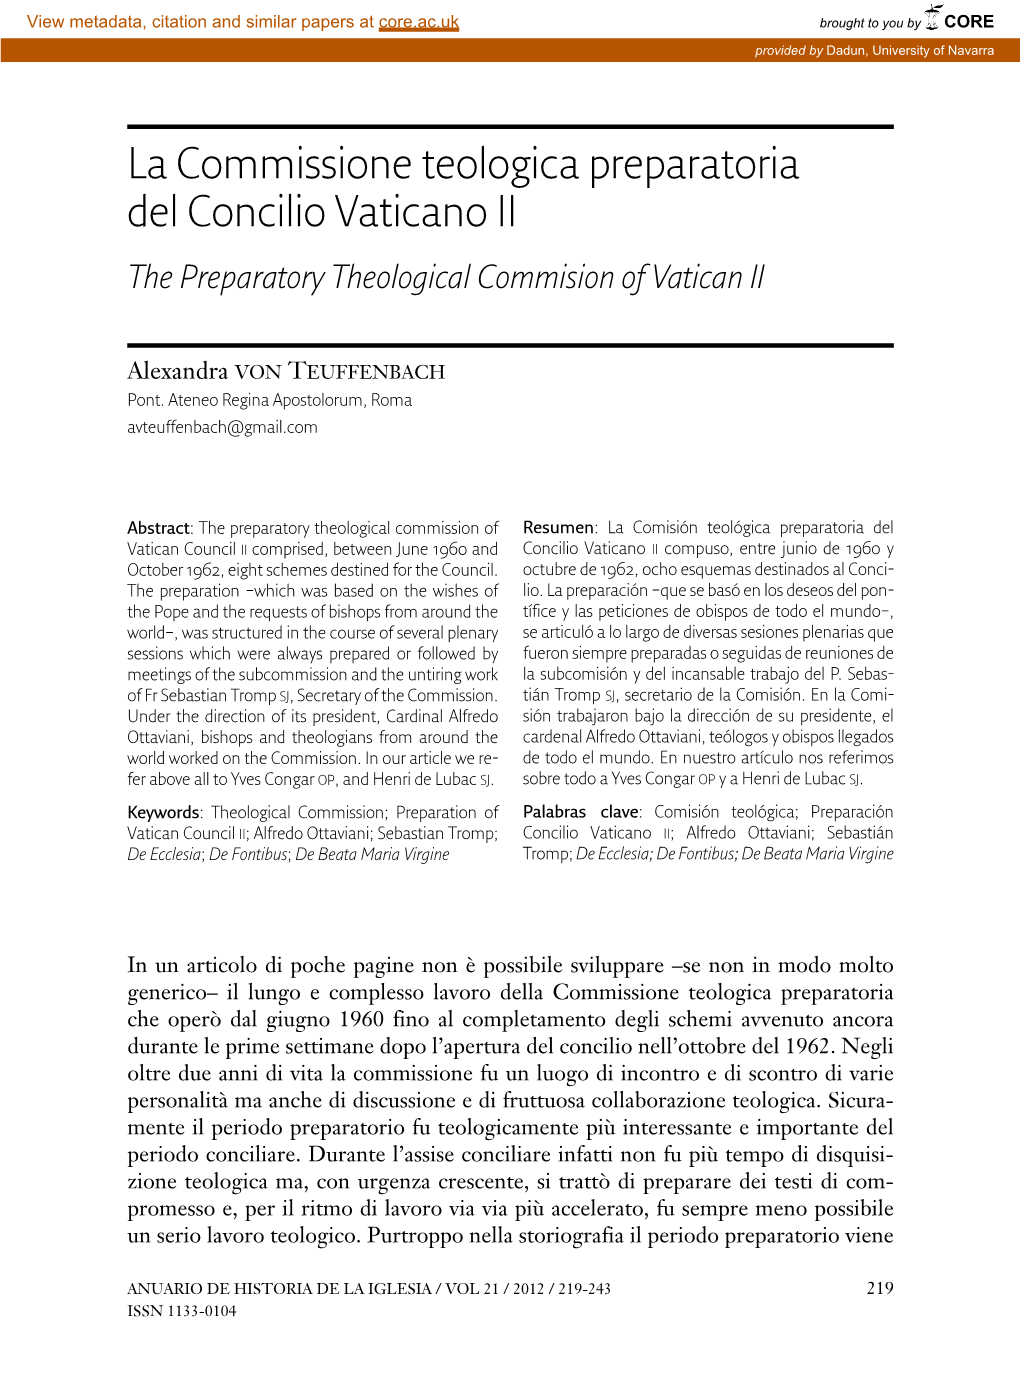 La Commissione Teologica Preparatoria Del Concilio Vaticano II the Preparatory Theological Commision of Vatican II